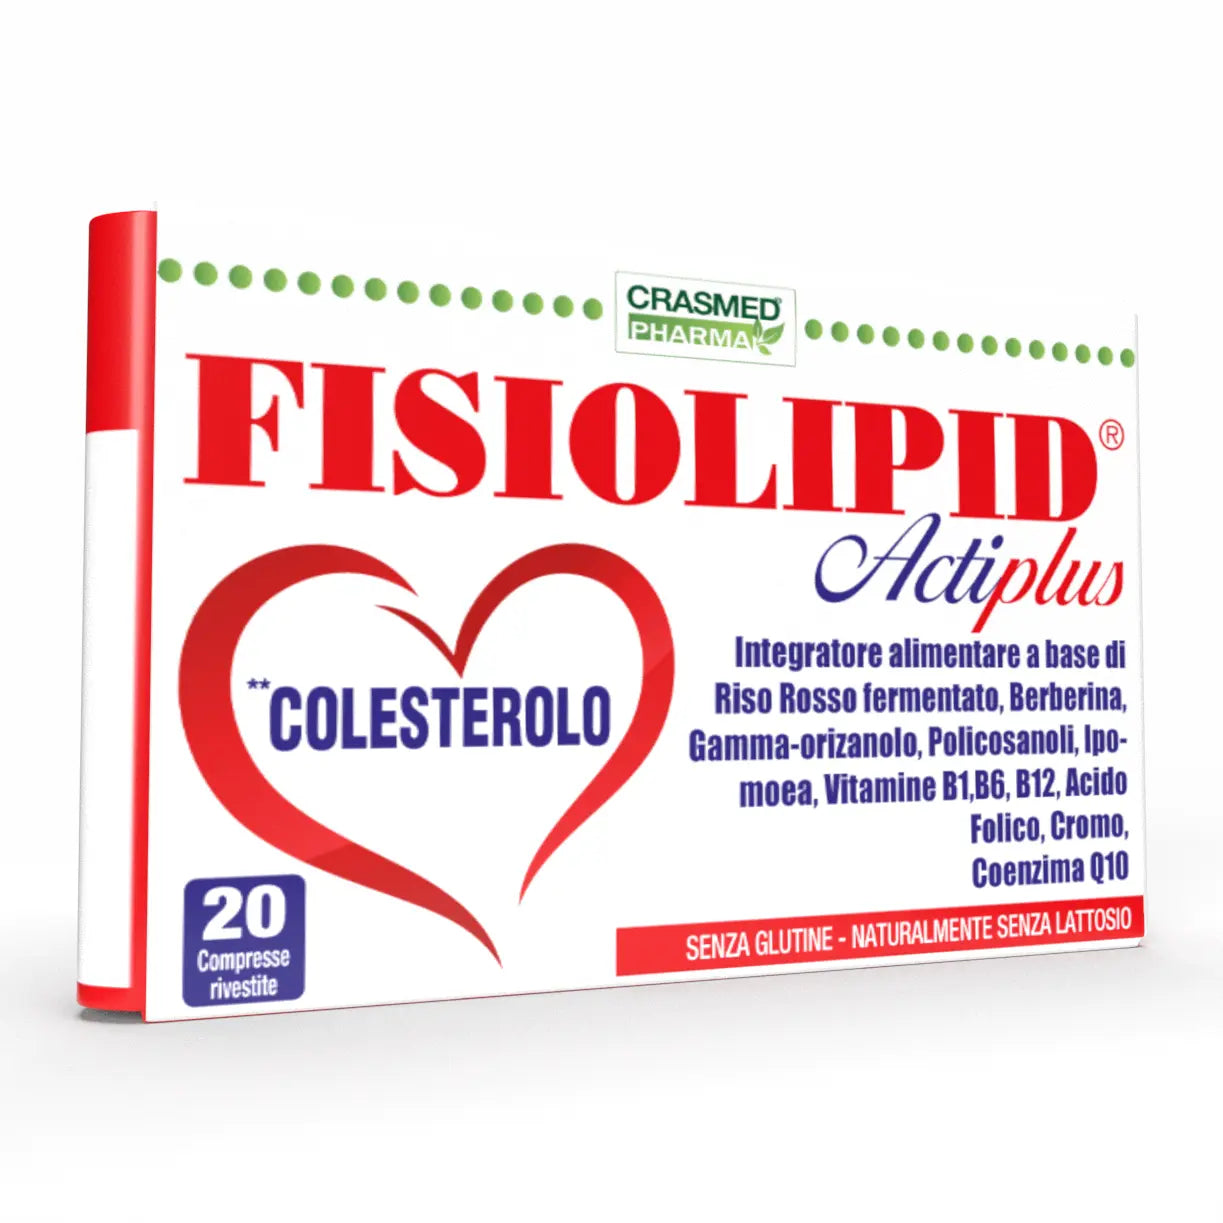 Fisiolipid Actiplus 20 Compresse: Il Tuo Alleato Naturale per un Cuore Sano e un Colesterolo Equilibrato